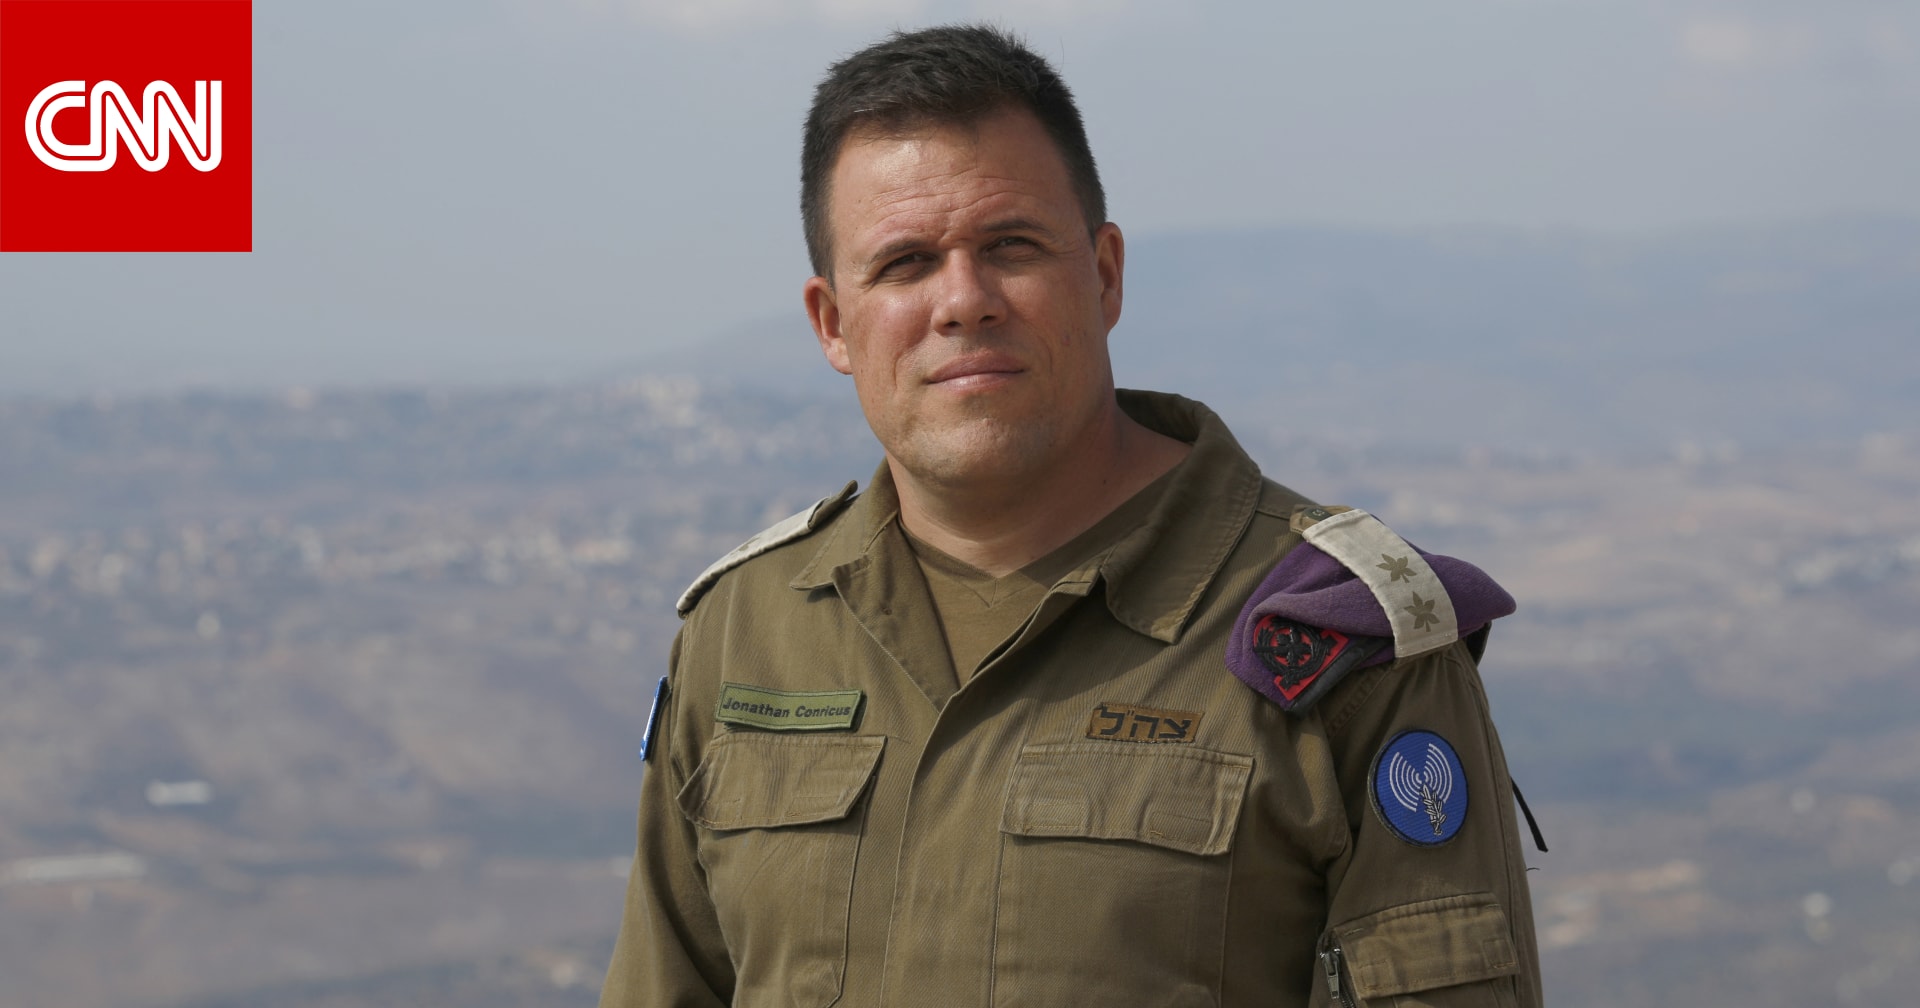 متحدث باسم الجيش الإسرائيلي لـCNN: وقع "خطأ في الترجمة" بالإعلان الأولي عن إنقاذ الجندية المحتجزة لدى حماس